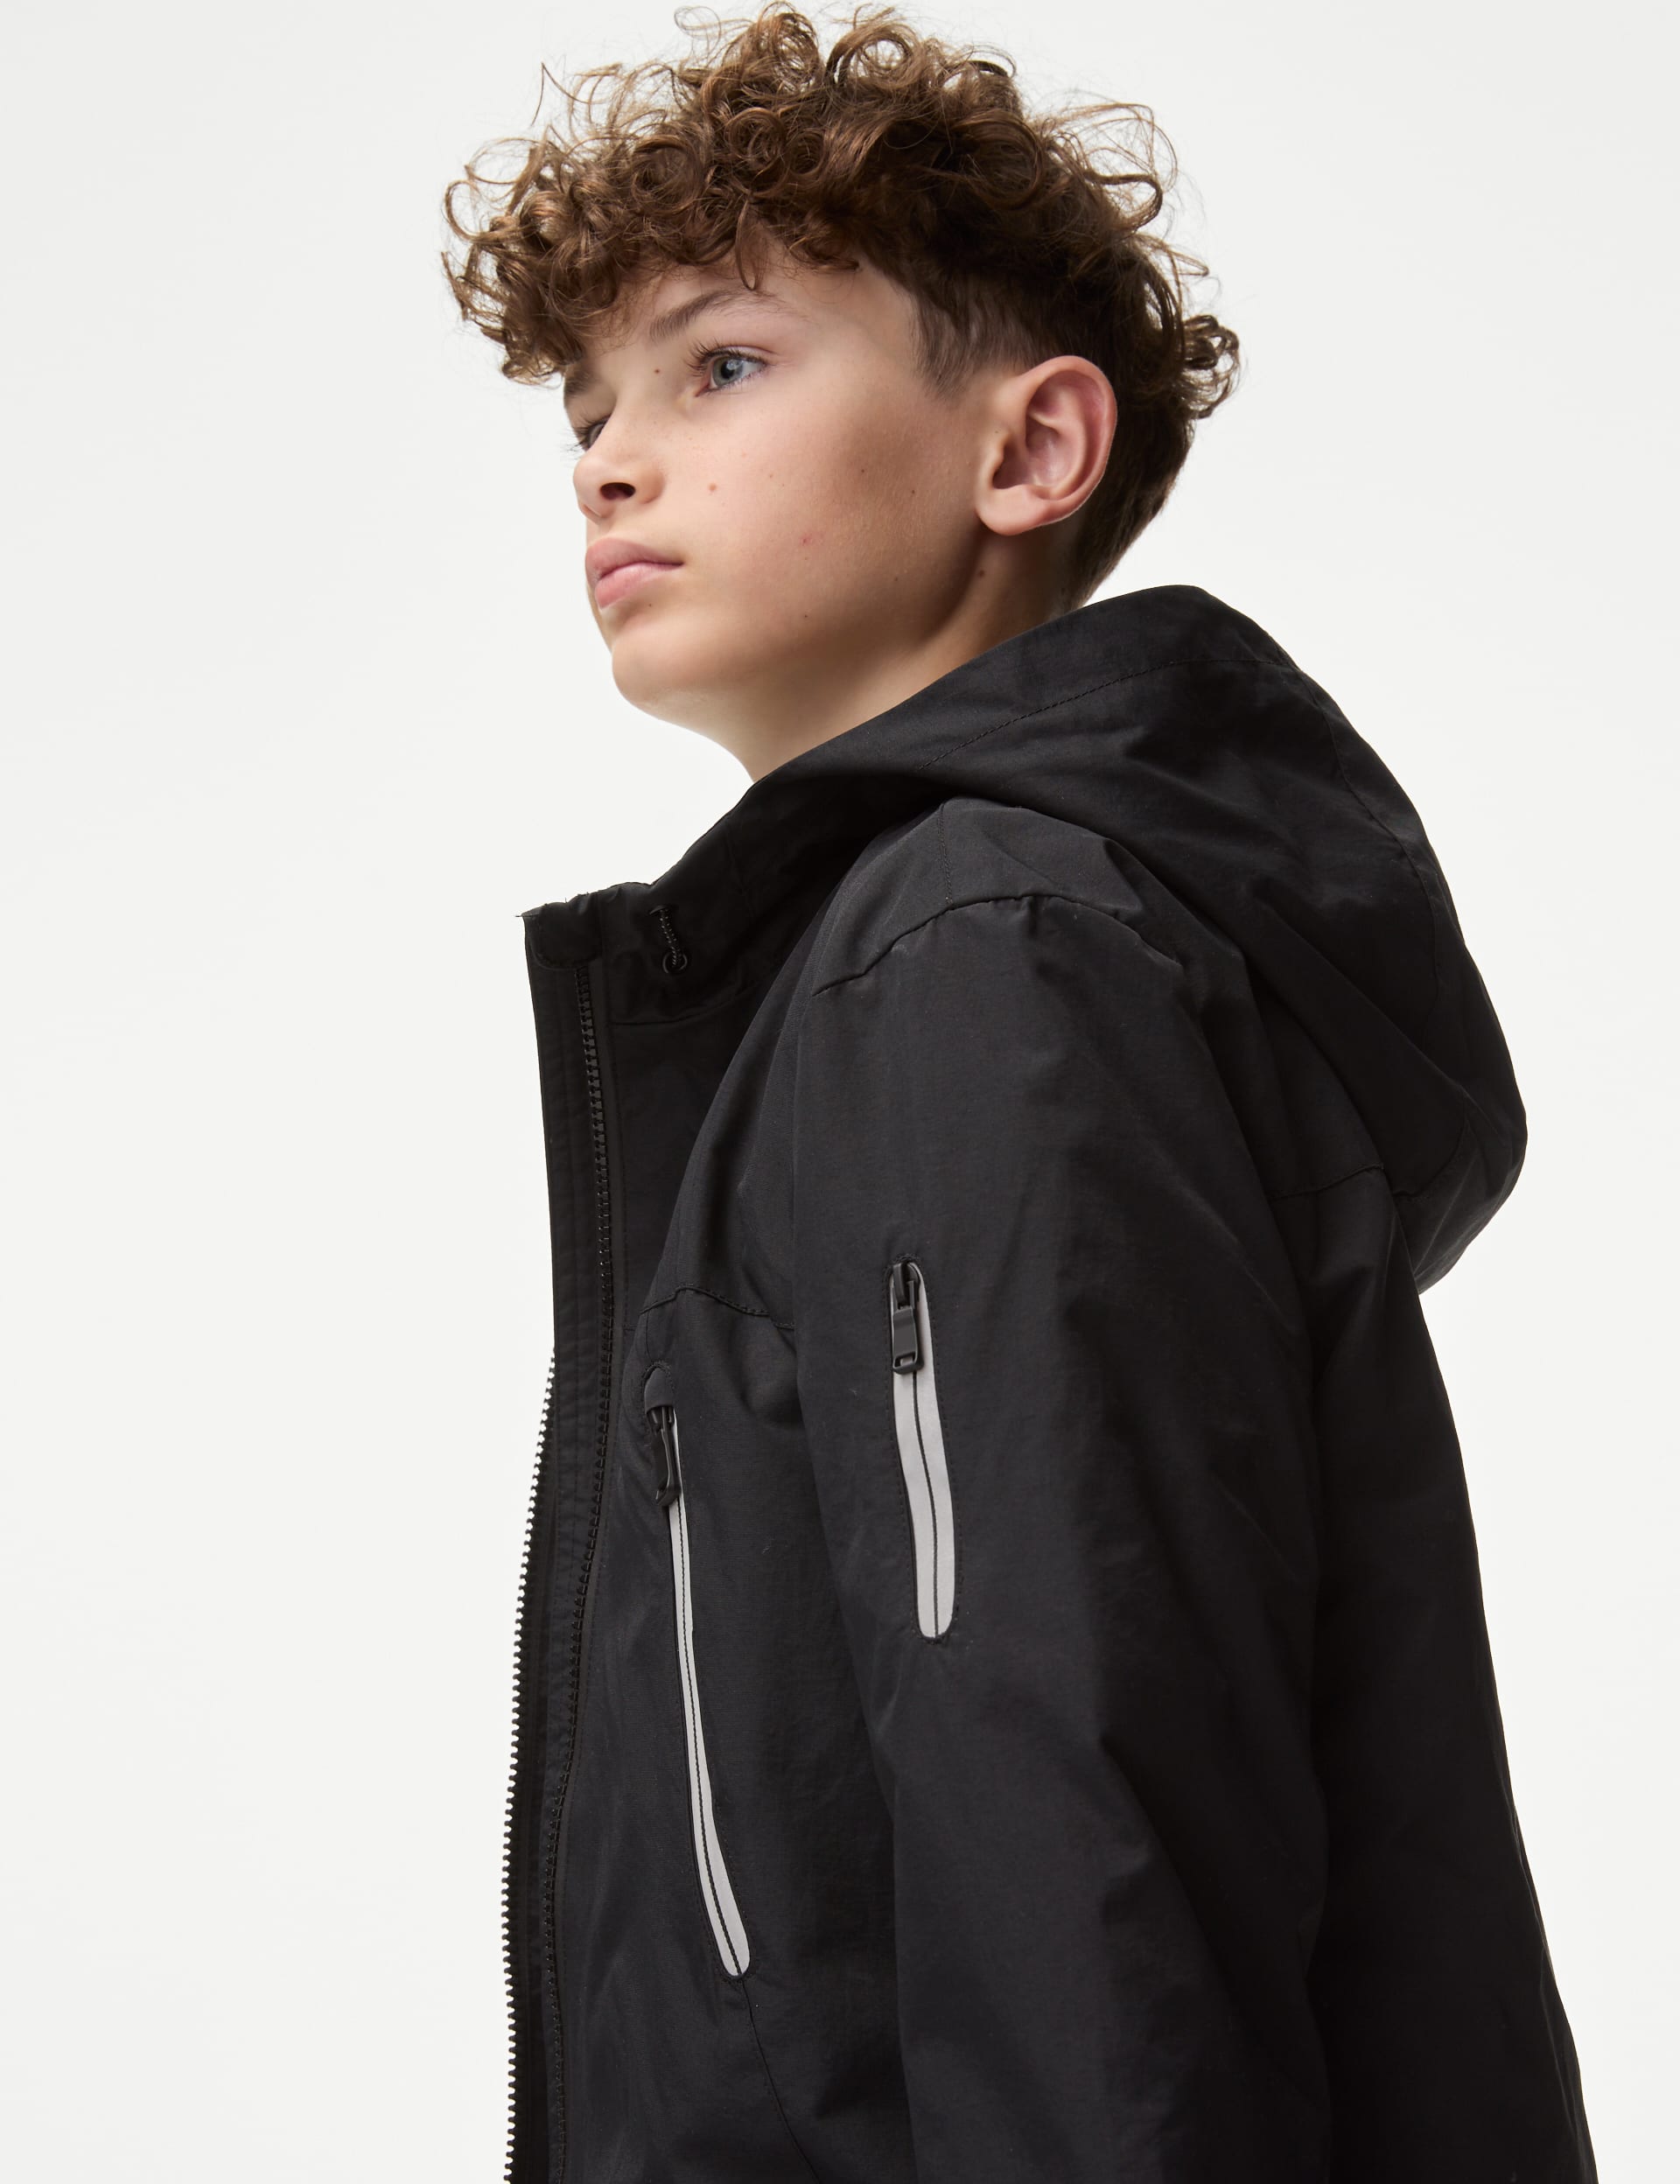 Stormwear™ Fleece Lined Hooded Jacket (6-16 Yrs)